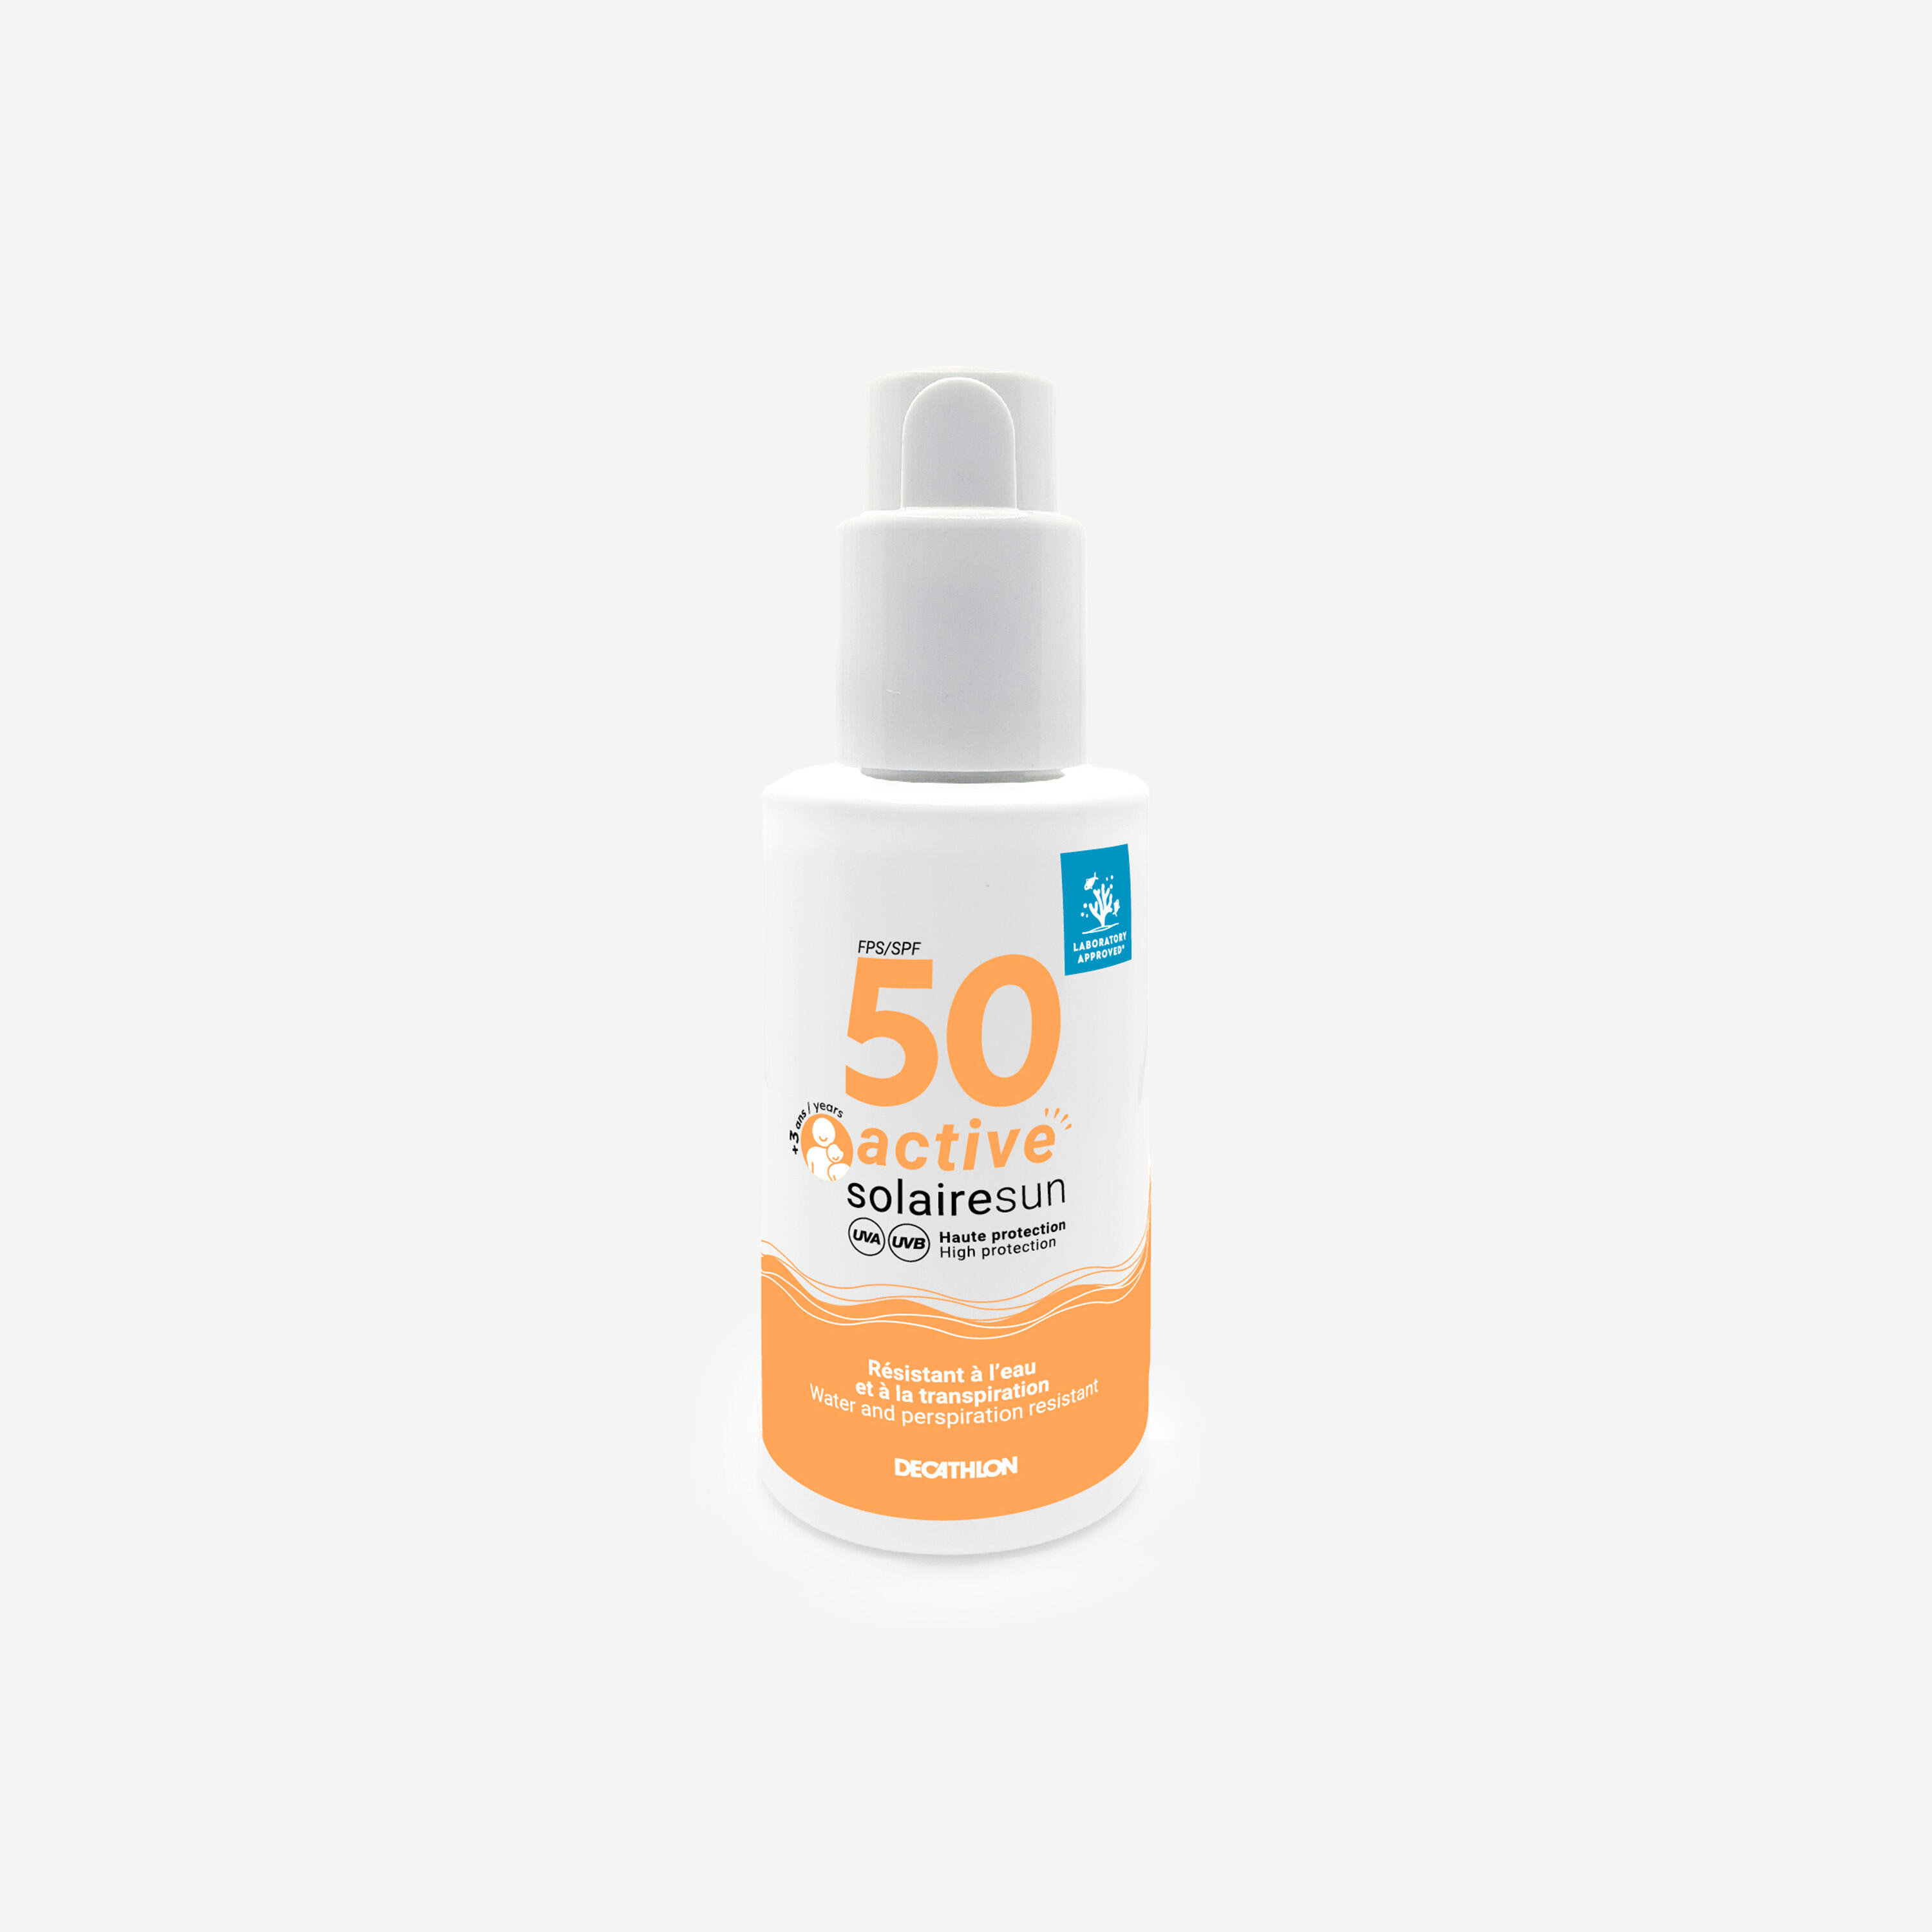 DECATHLON Active sun protection spray SPF 50 150 ml